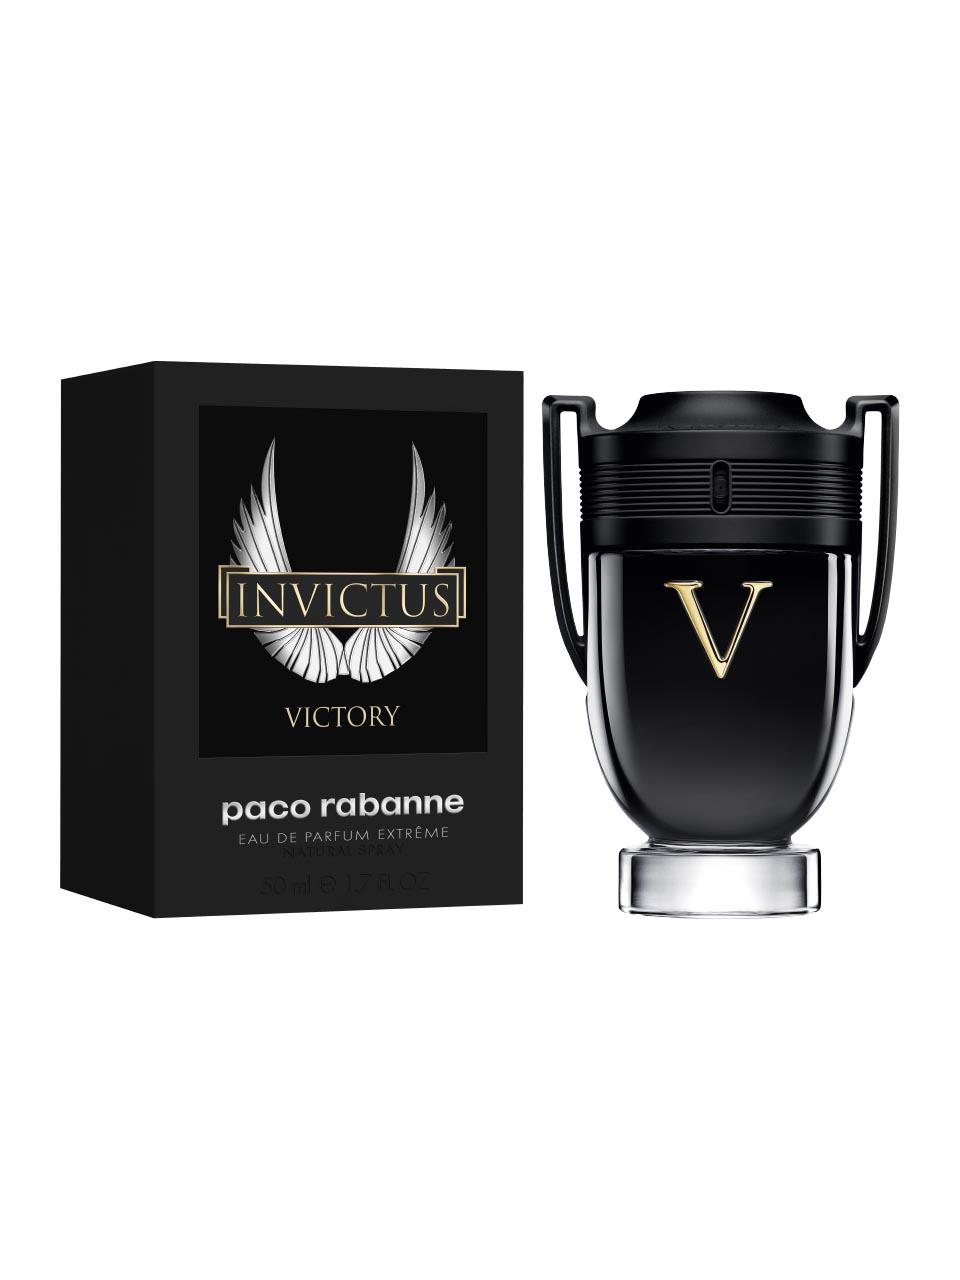 Paco Rabanne Invictus Victory Eau de Parfum Extrême 50 ml